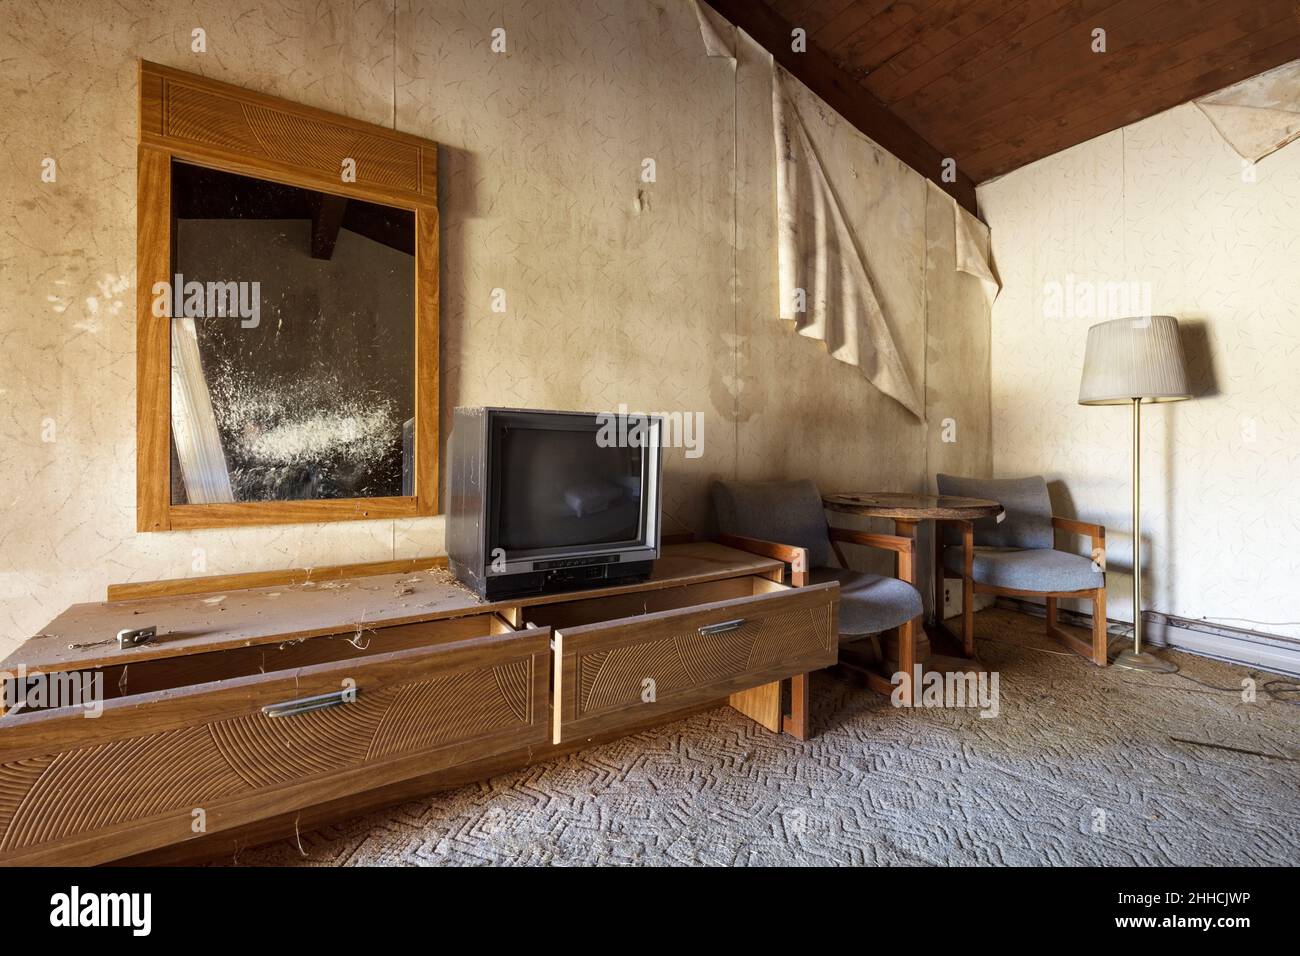 Una stanza abbandonata del motel con il decadimento che comincia prendere la presa Foto Stock